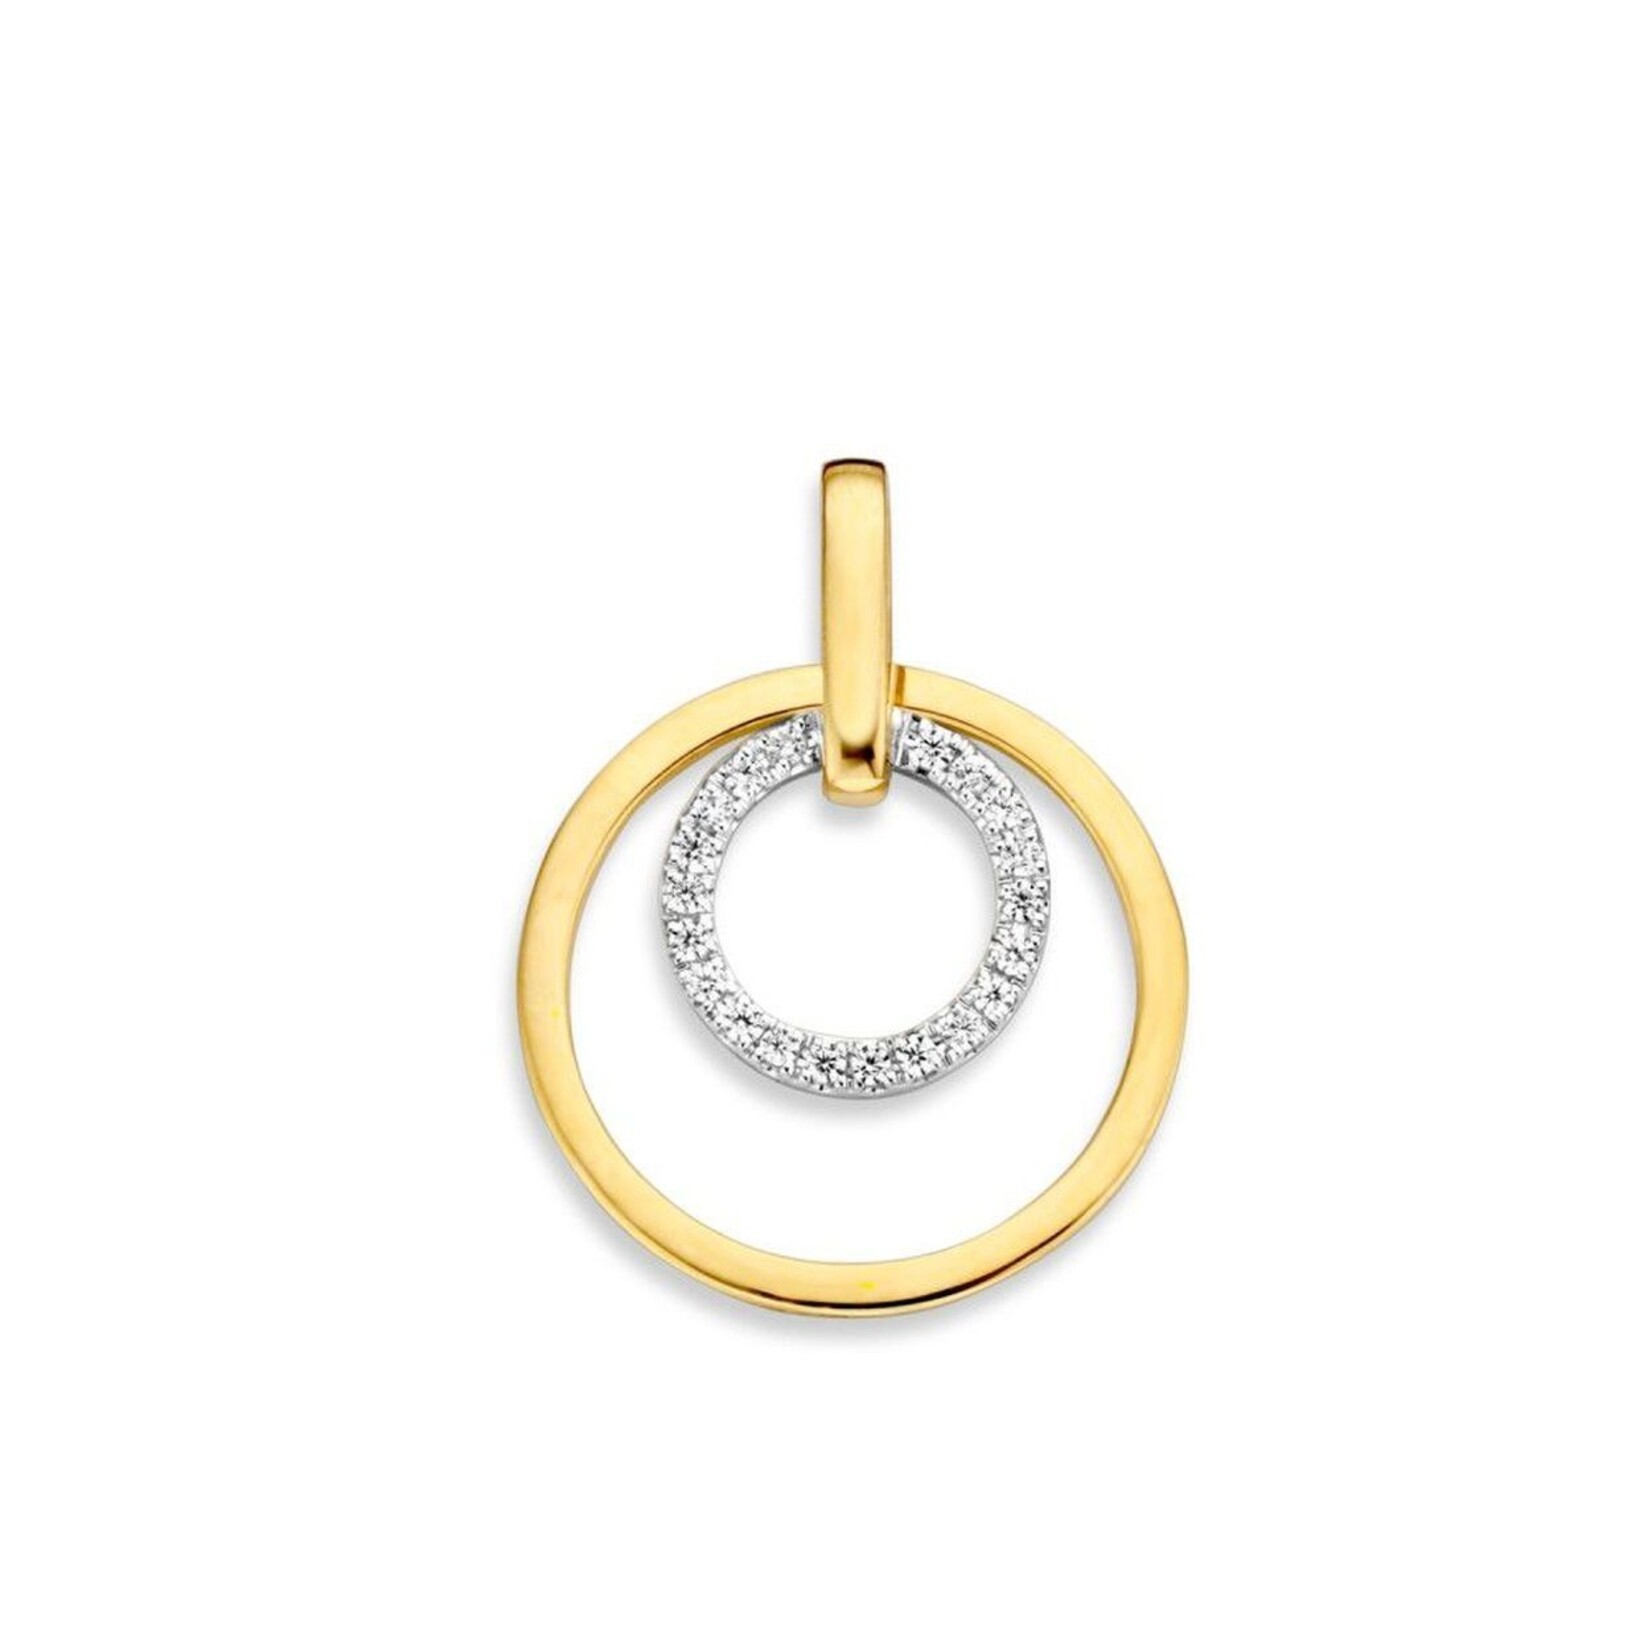 Excellent Jewelry Excellent Jewelry bicolor gouden hanger hh426179 met zirkonia